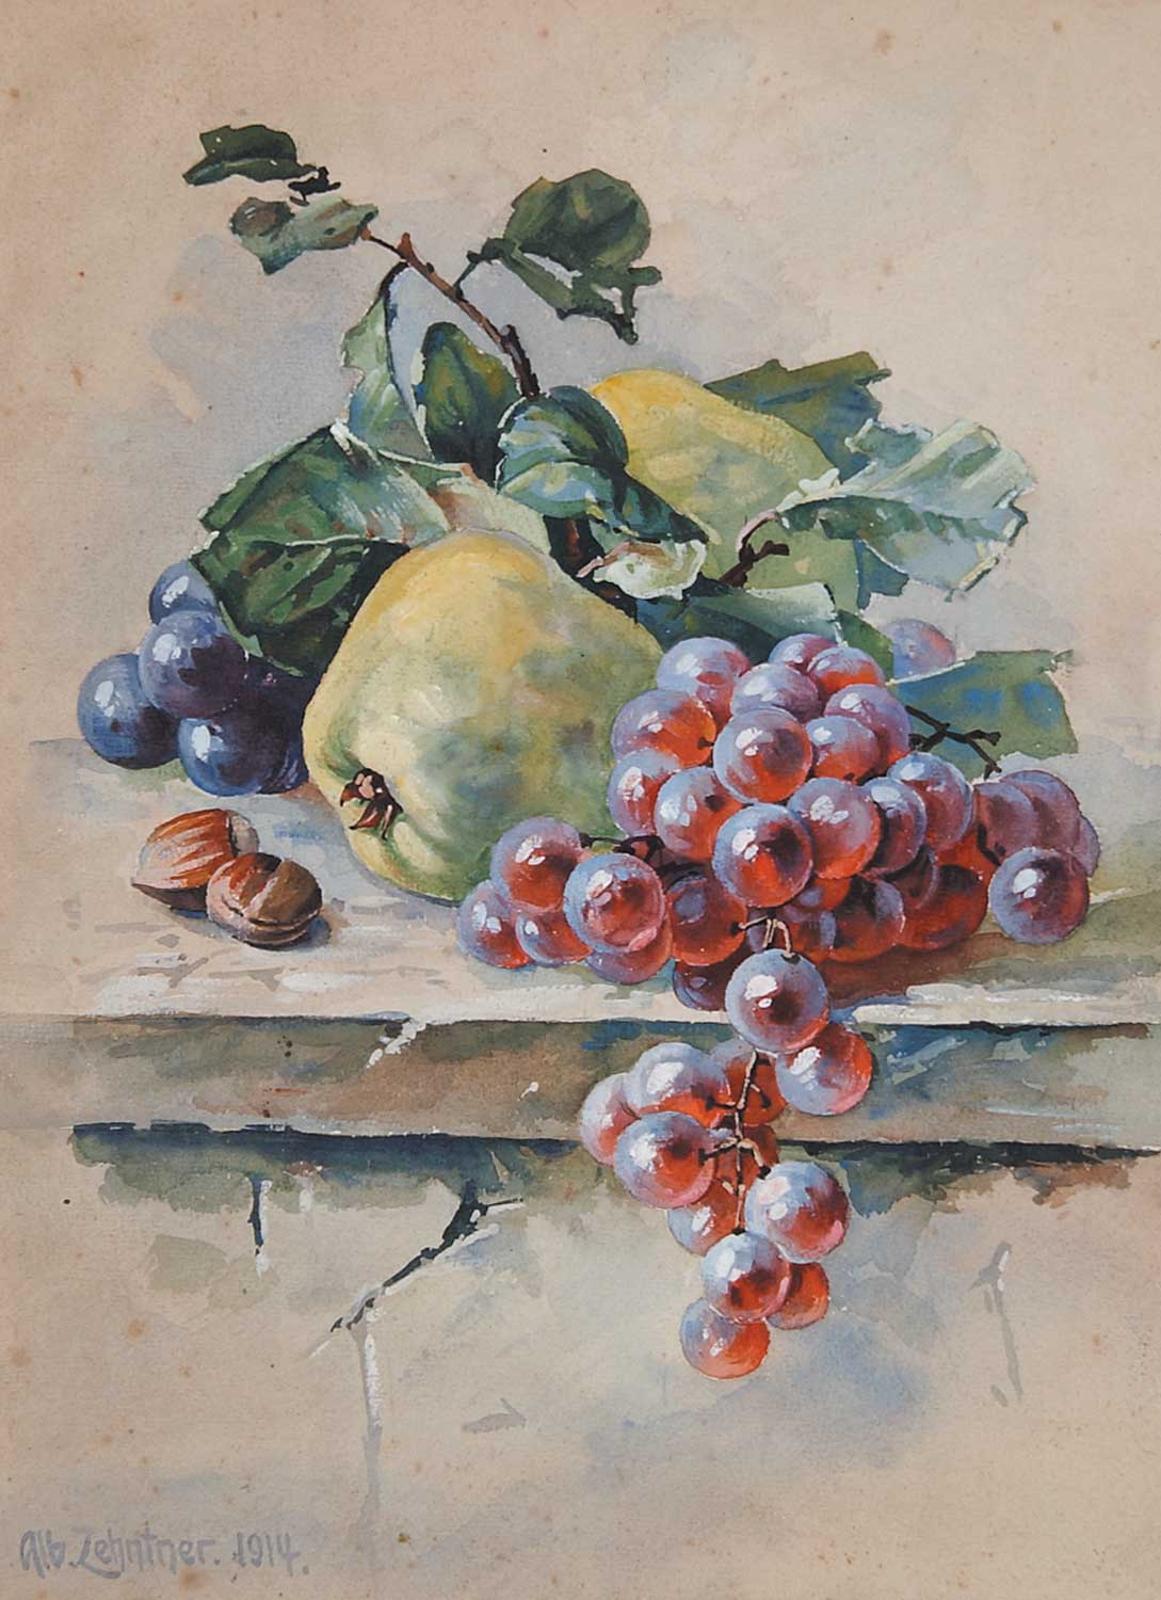 Albert Zehntner - Untitled - Apples and Grapes